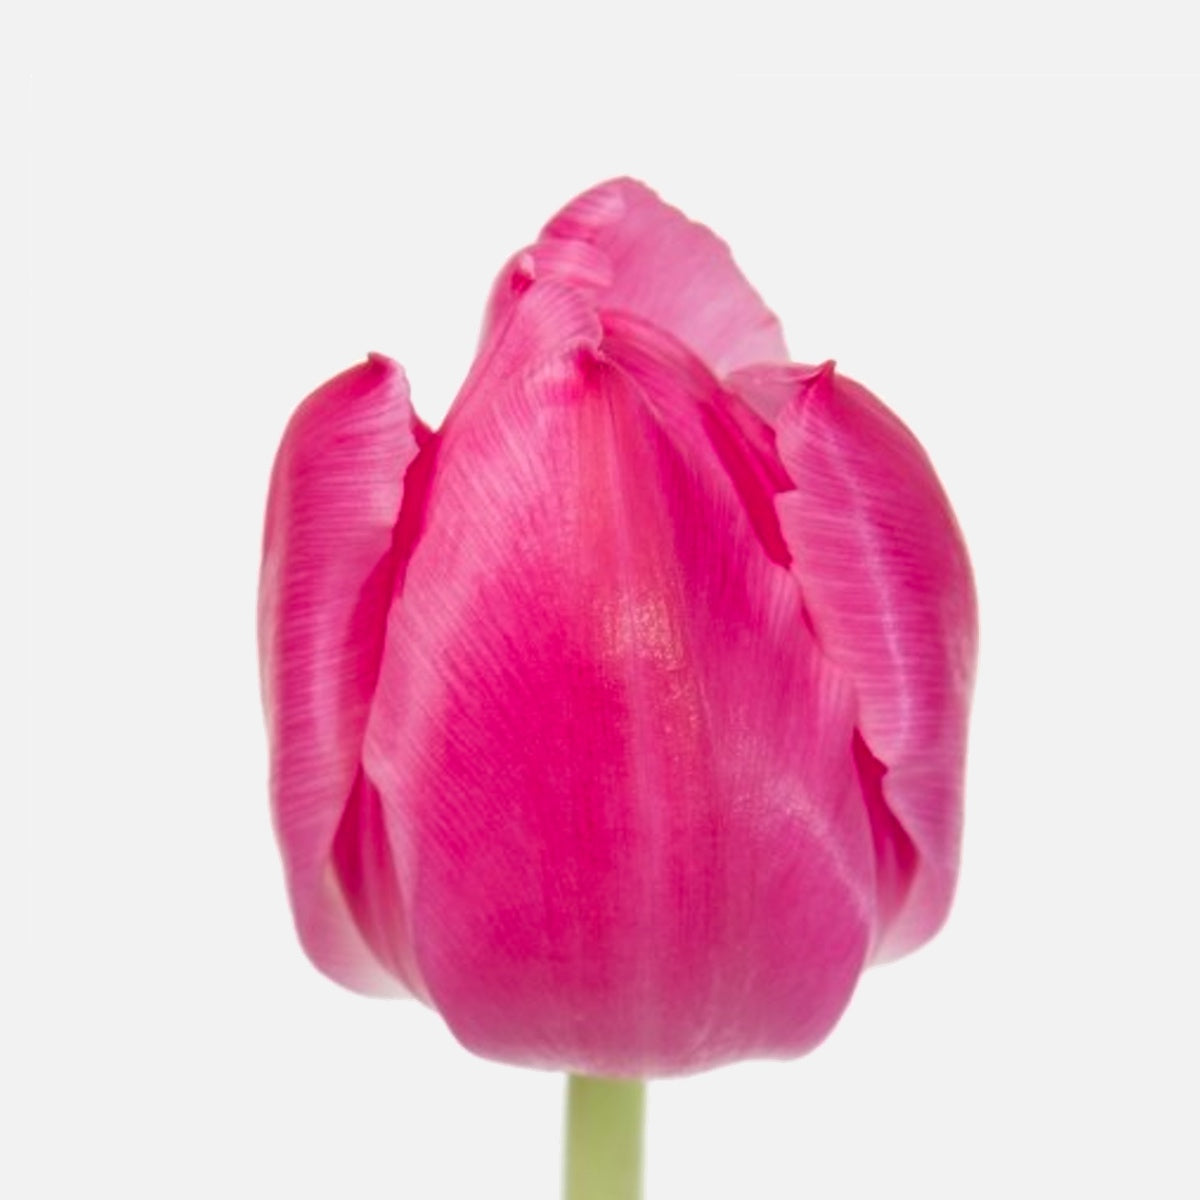 Doppelte Tulpen pink von tomflowers.ch